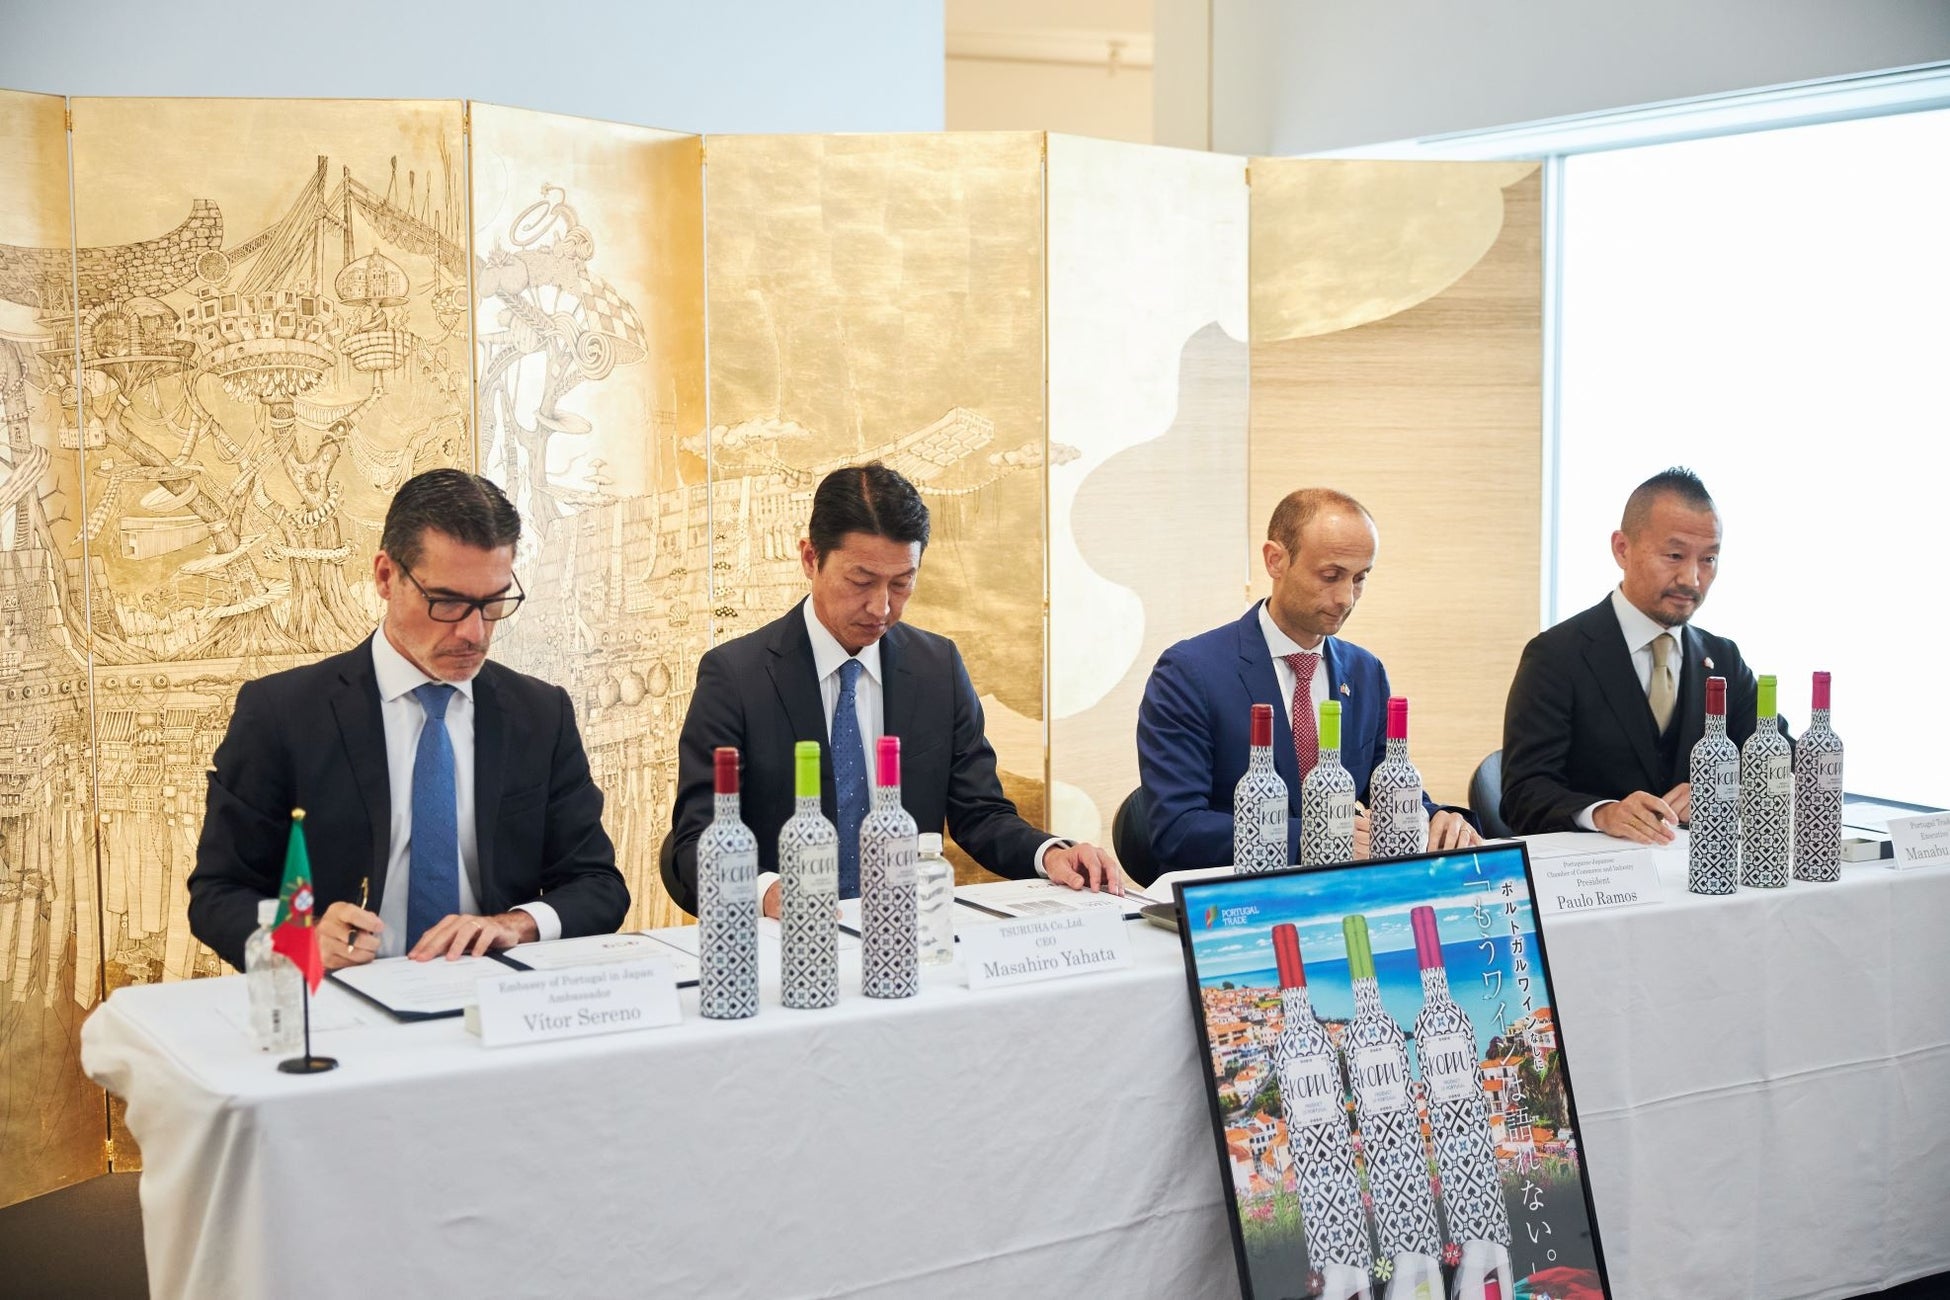 株式会社ツルハ、ポルトガル・トレード株式会社、日本ポルトガル商工会議所、およびポルトガル大使館が文化交流の覚書締結調印式を開催